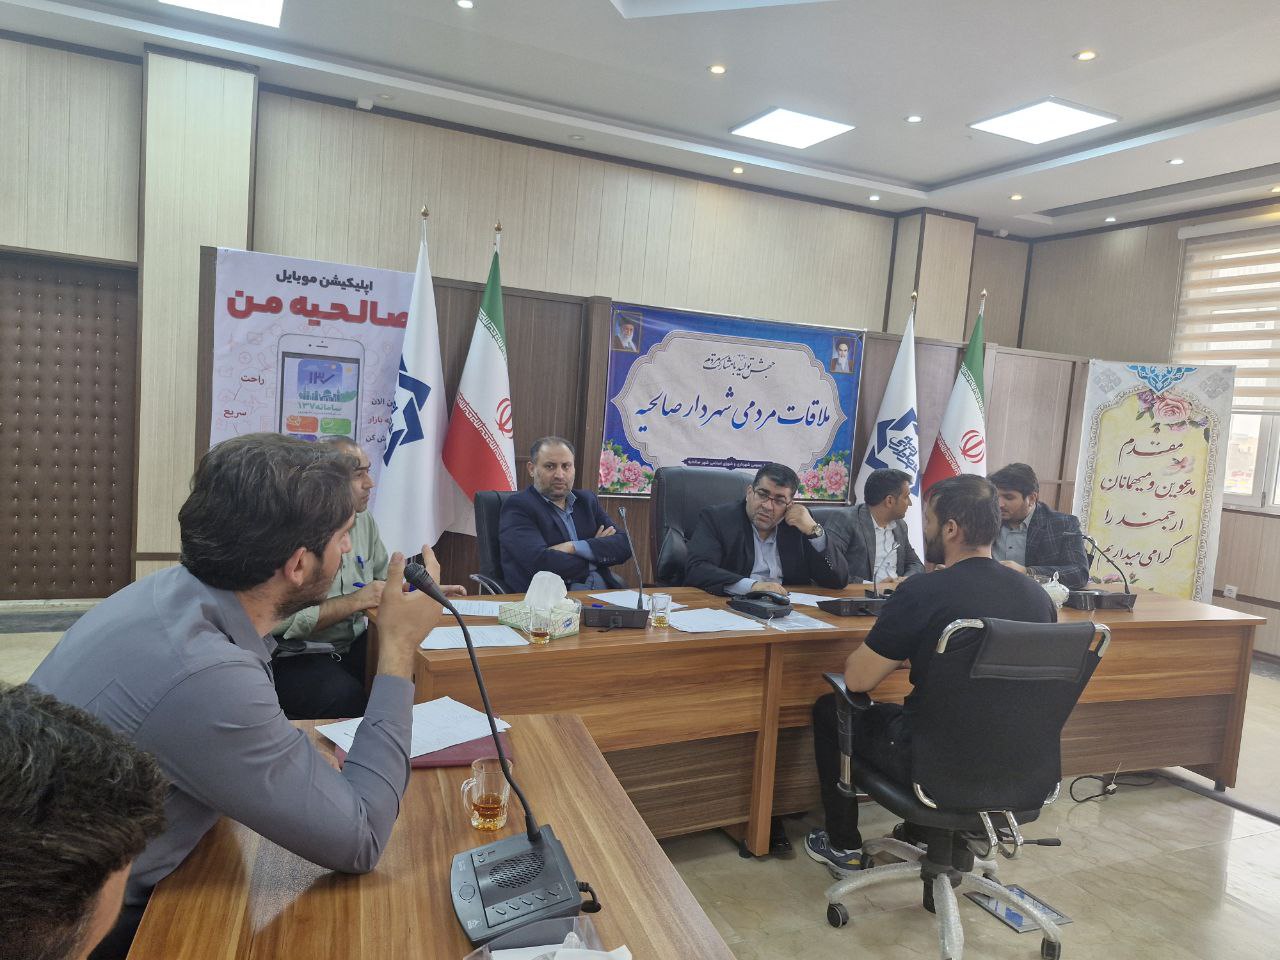 دومین جلسه ملاقات شهردار صالحیه با شهروندان برگزار شد